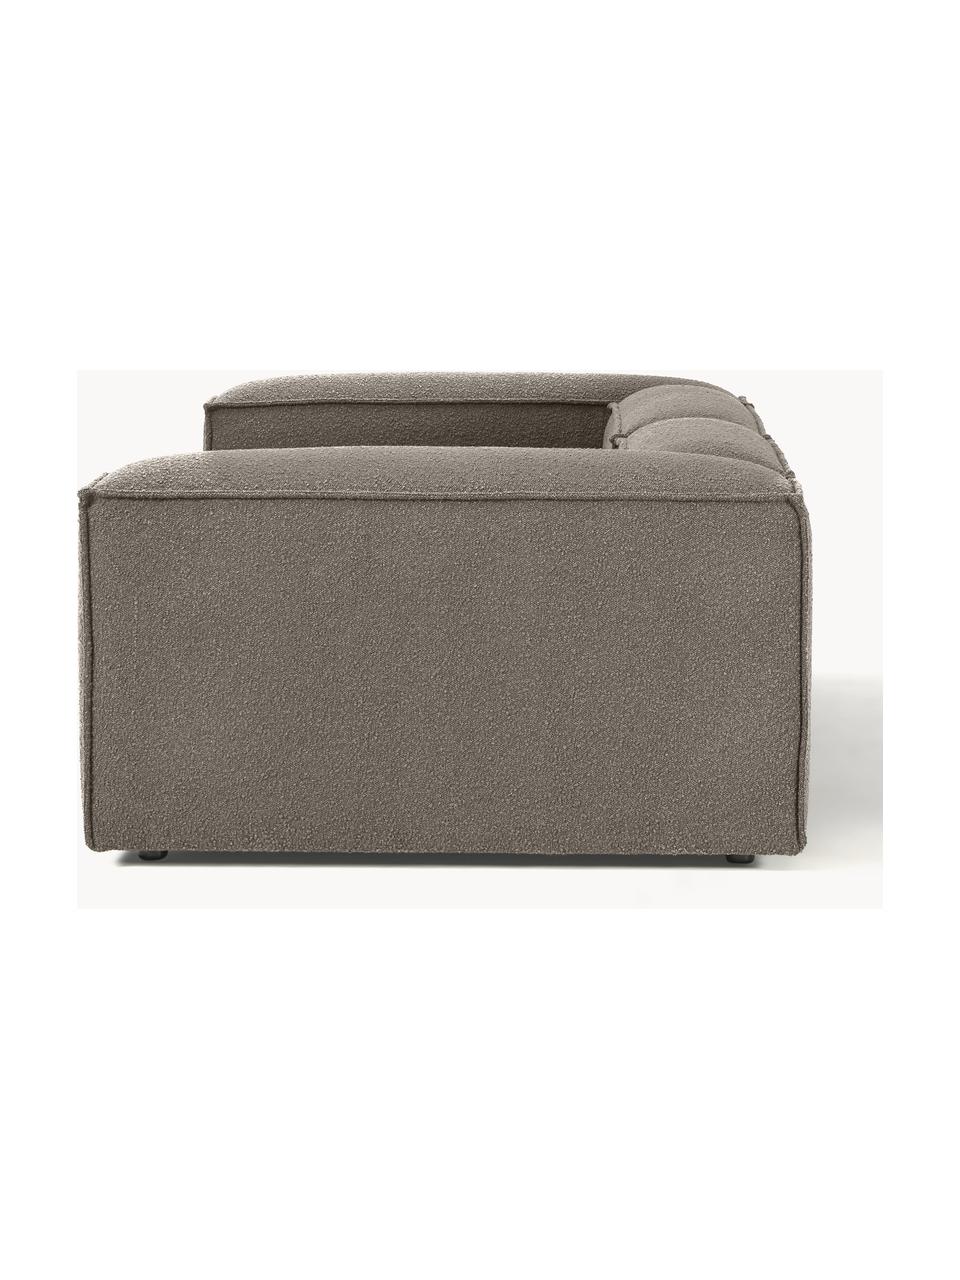 Canapé modulable 3 places en tissu bouclé Lennon, Bouclé grège, larg. 238 x prof. 119 cm